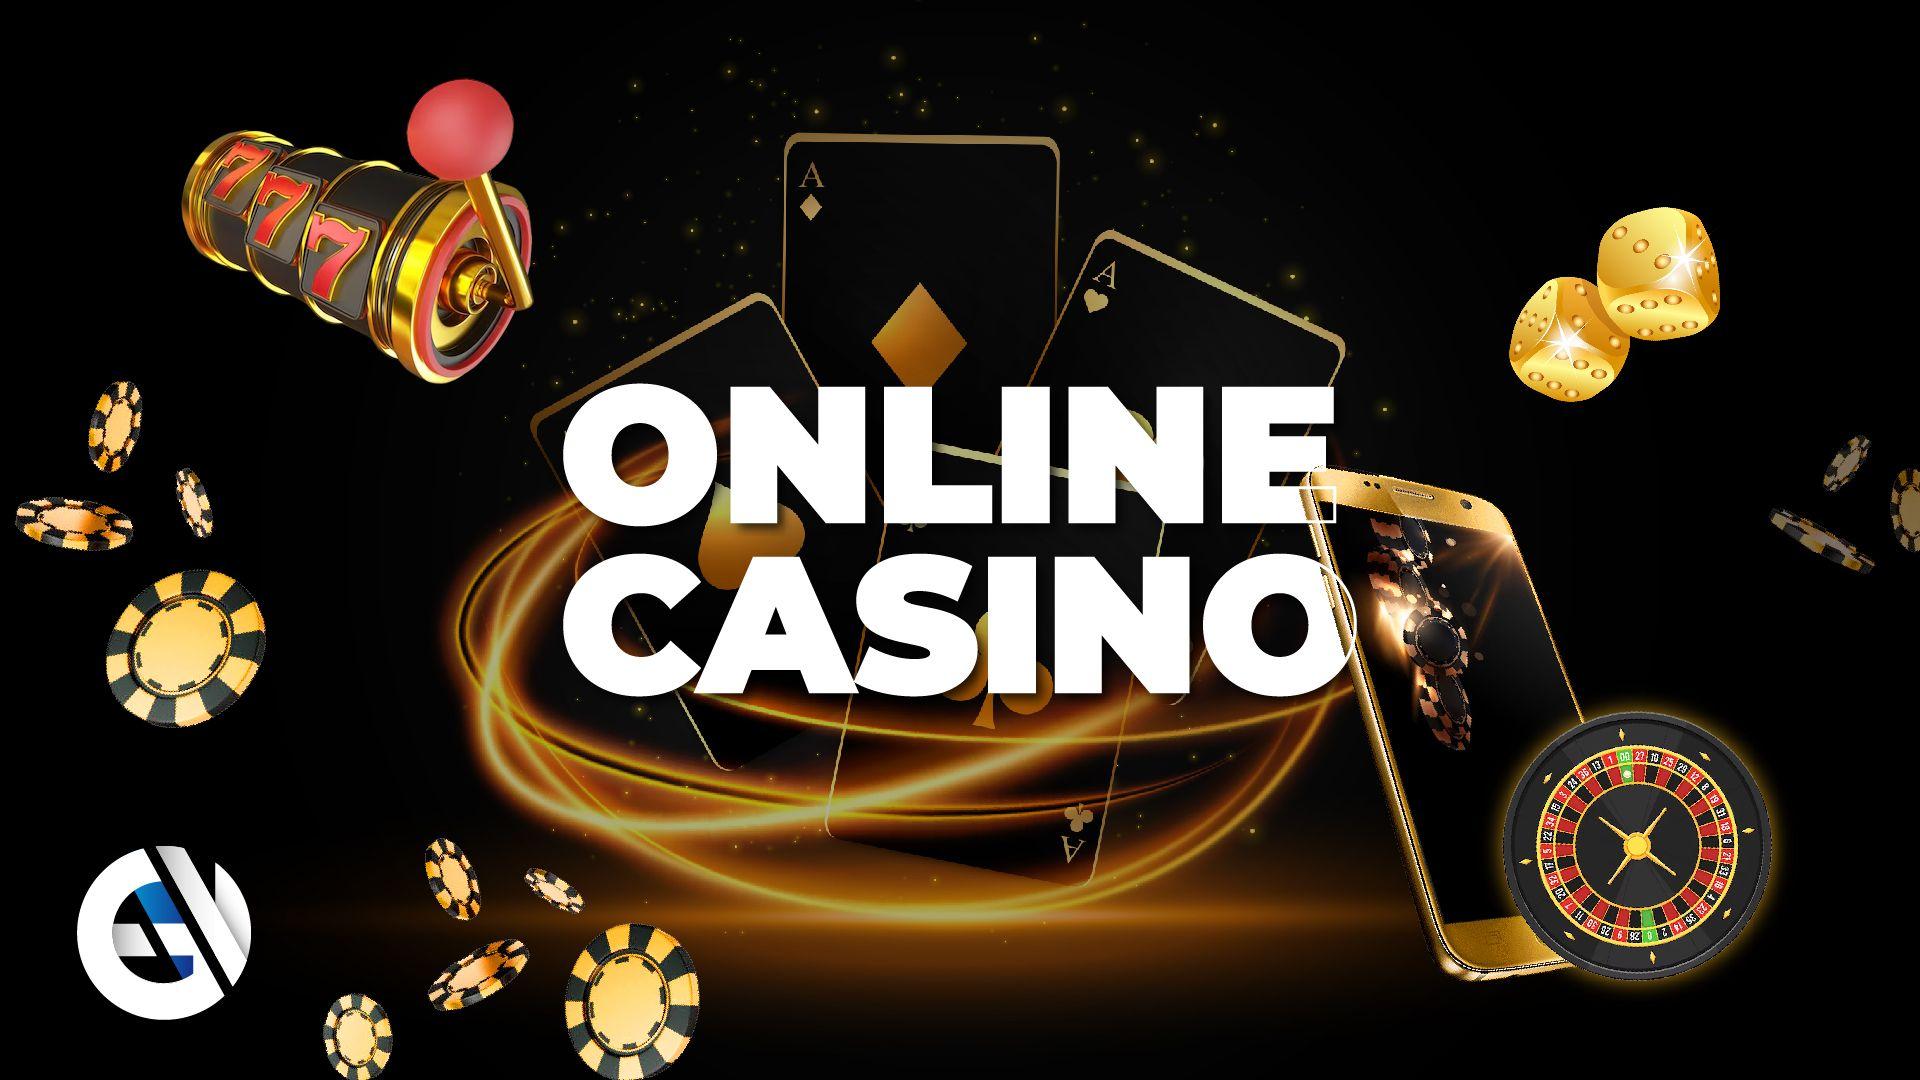 Najpopularniejsze gry w amerykańskich kasynach online: Automaty, gry stołowe i nie tylko